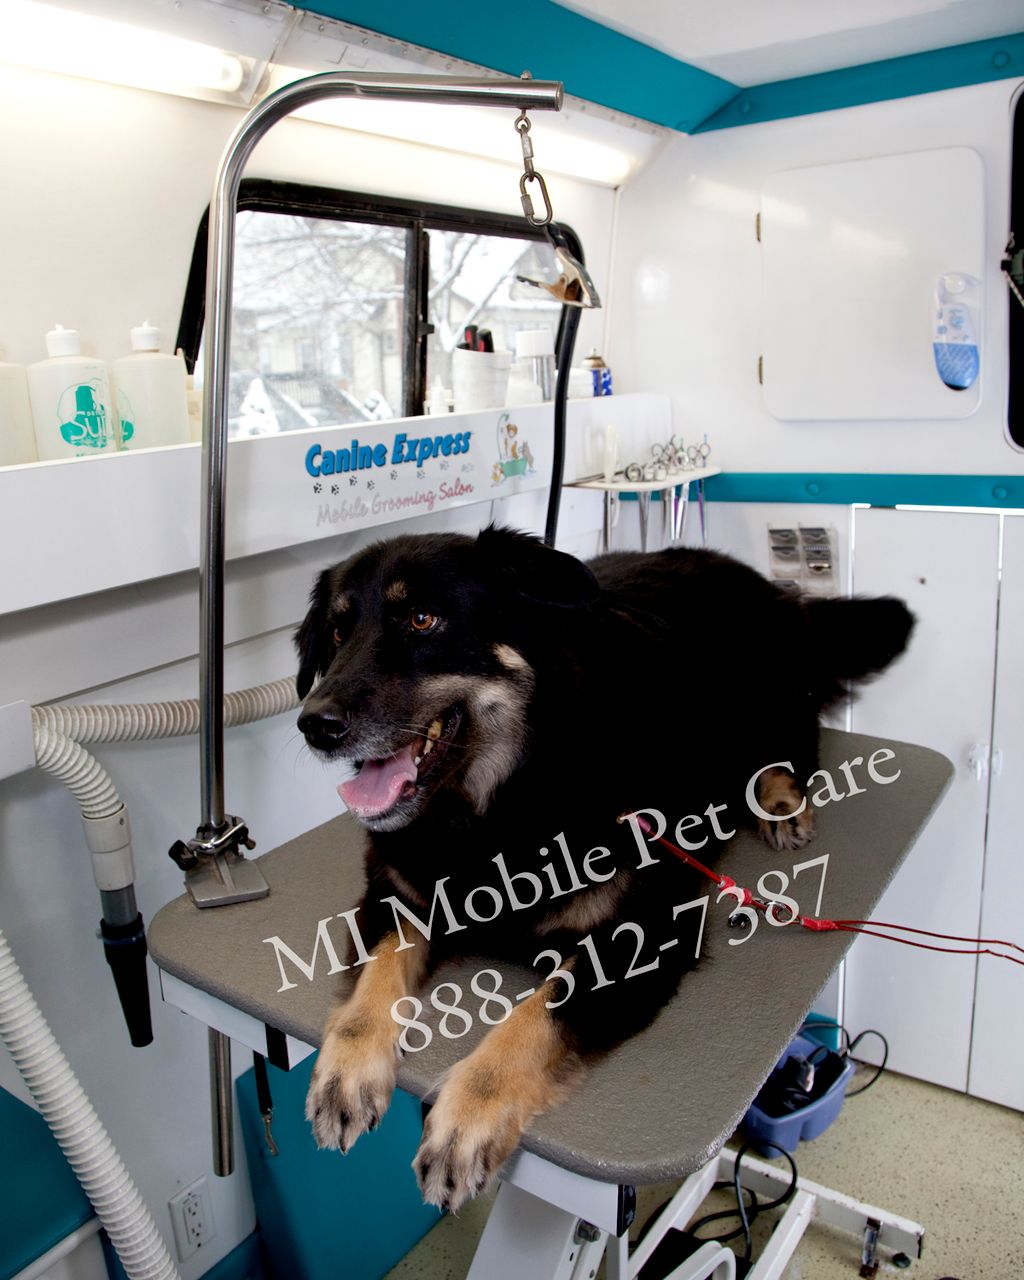 MI Mobile Pet Care